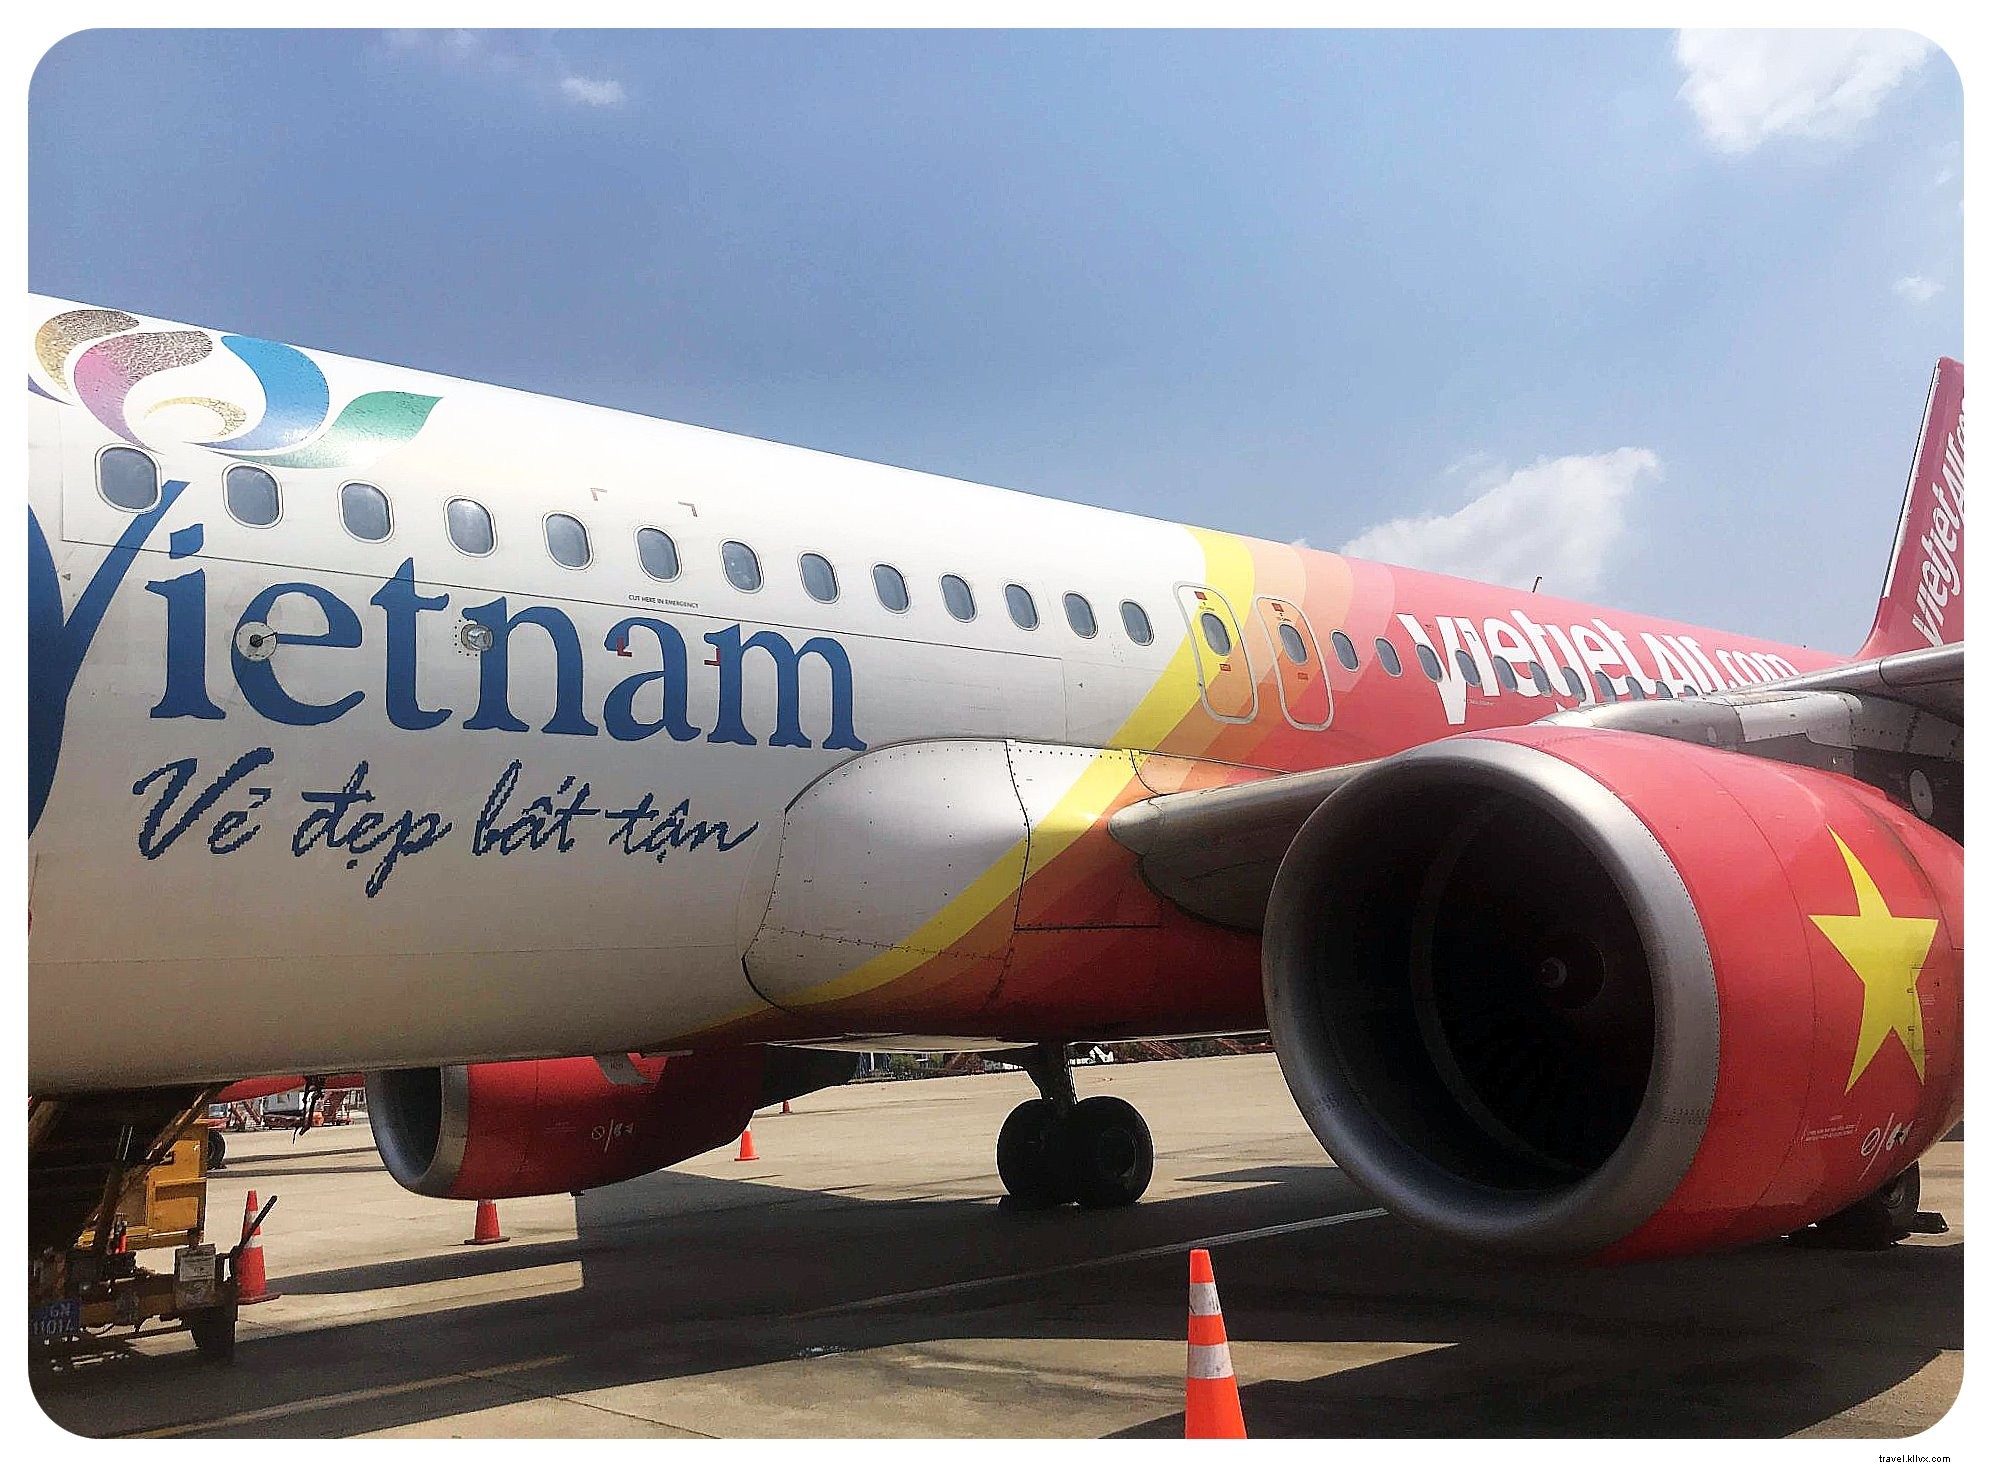 Berapa Biaya Perjalanan Di Vietnam?